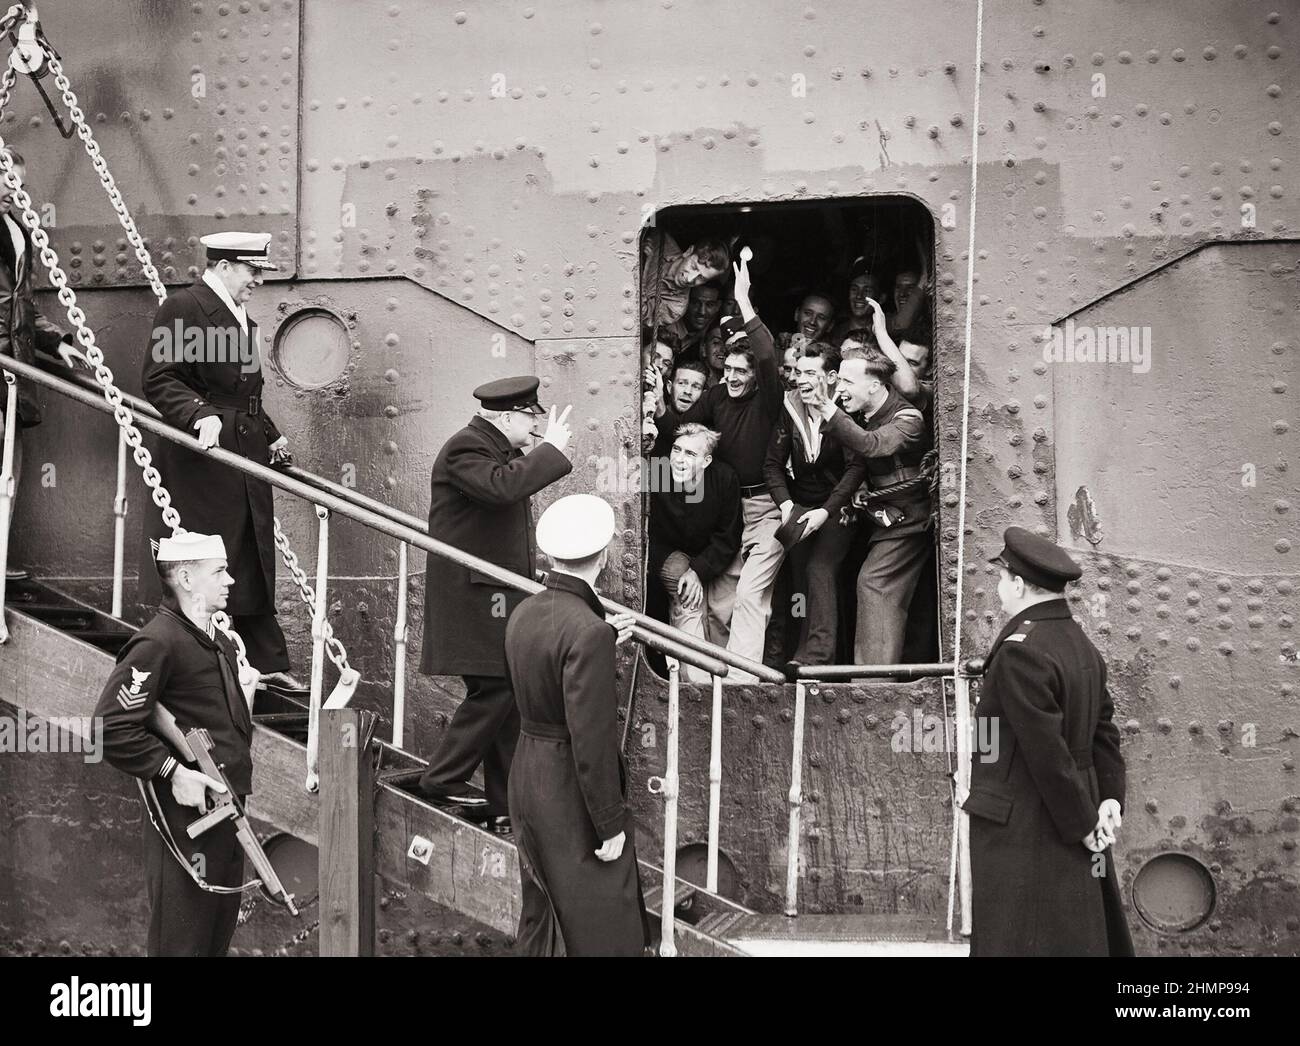 Der Premierminister gibt das Siegeszeichen als Antwort auf die guten Wünsche der Matrosen, Flieger usw. an Bord, als er WW2 von der SS-KÖNIGIN MARY aussteigt Stockfoto